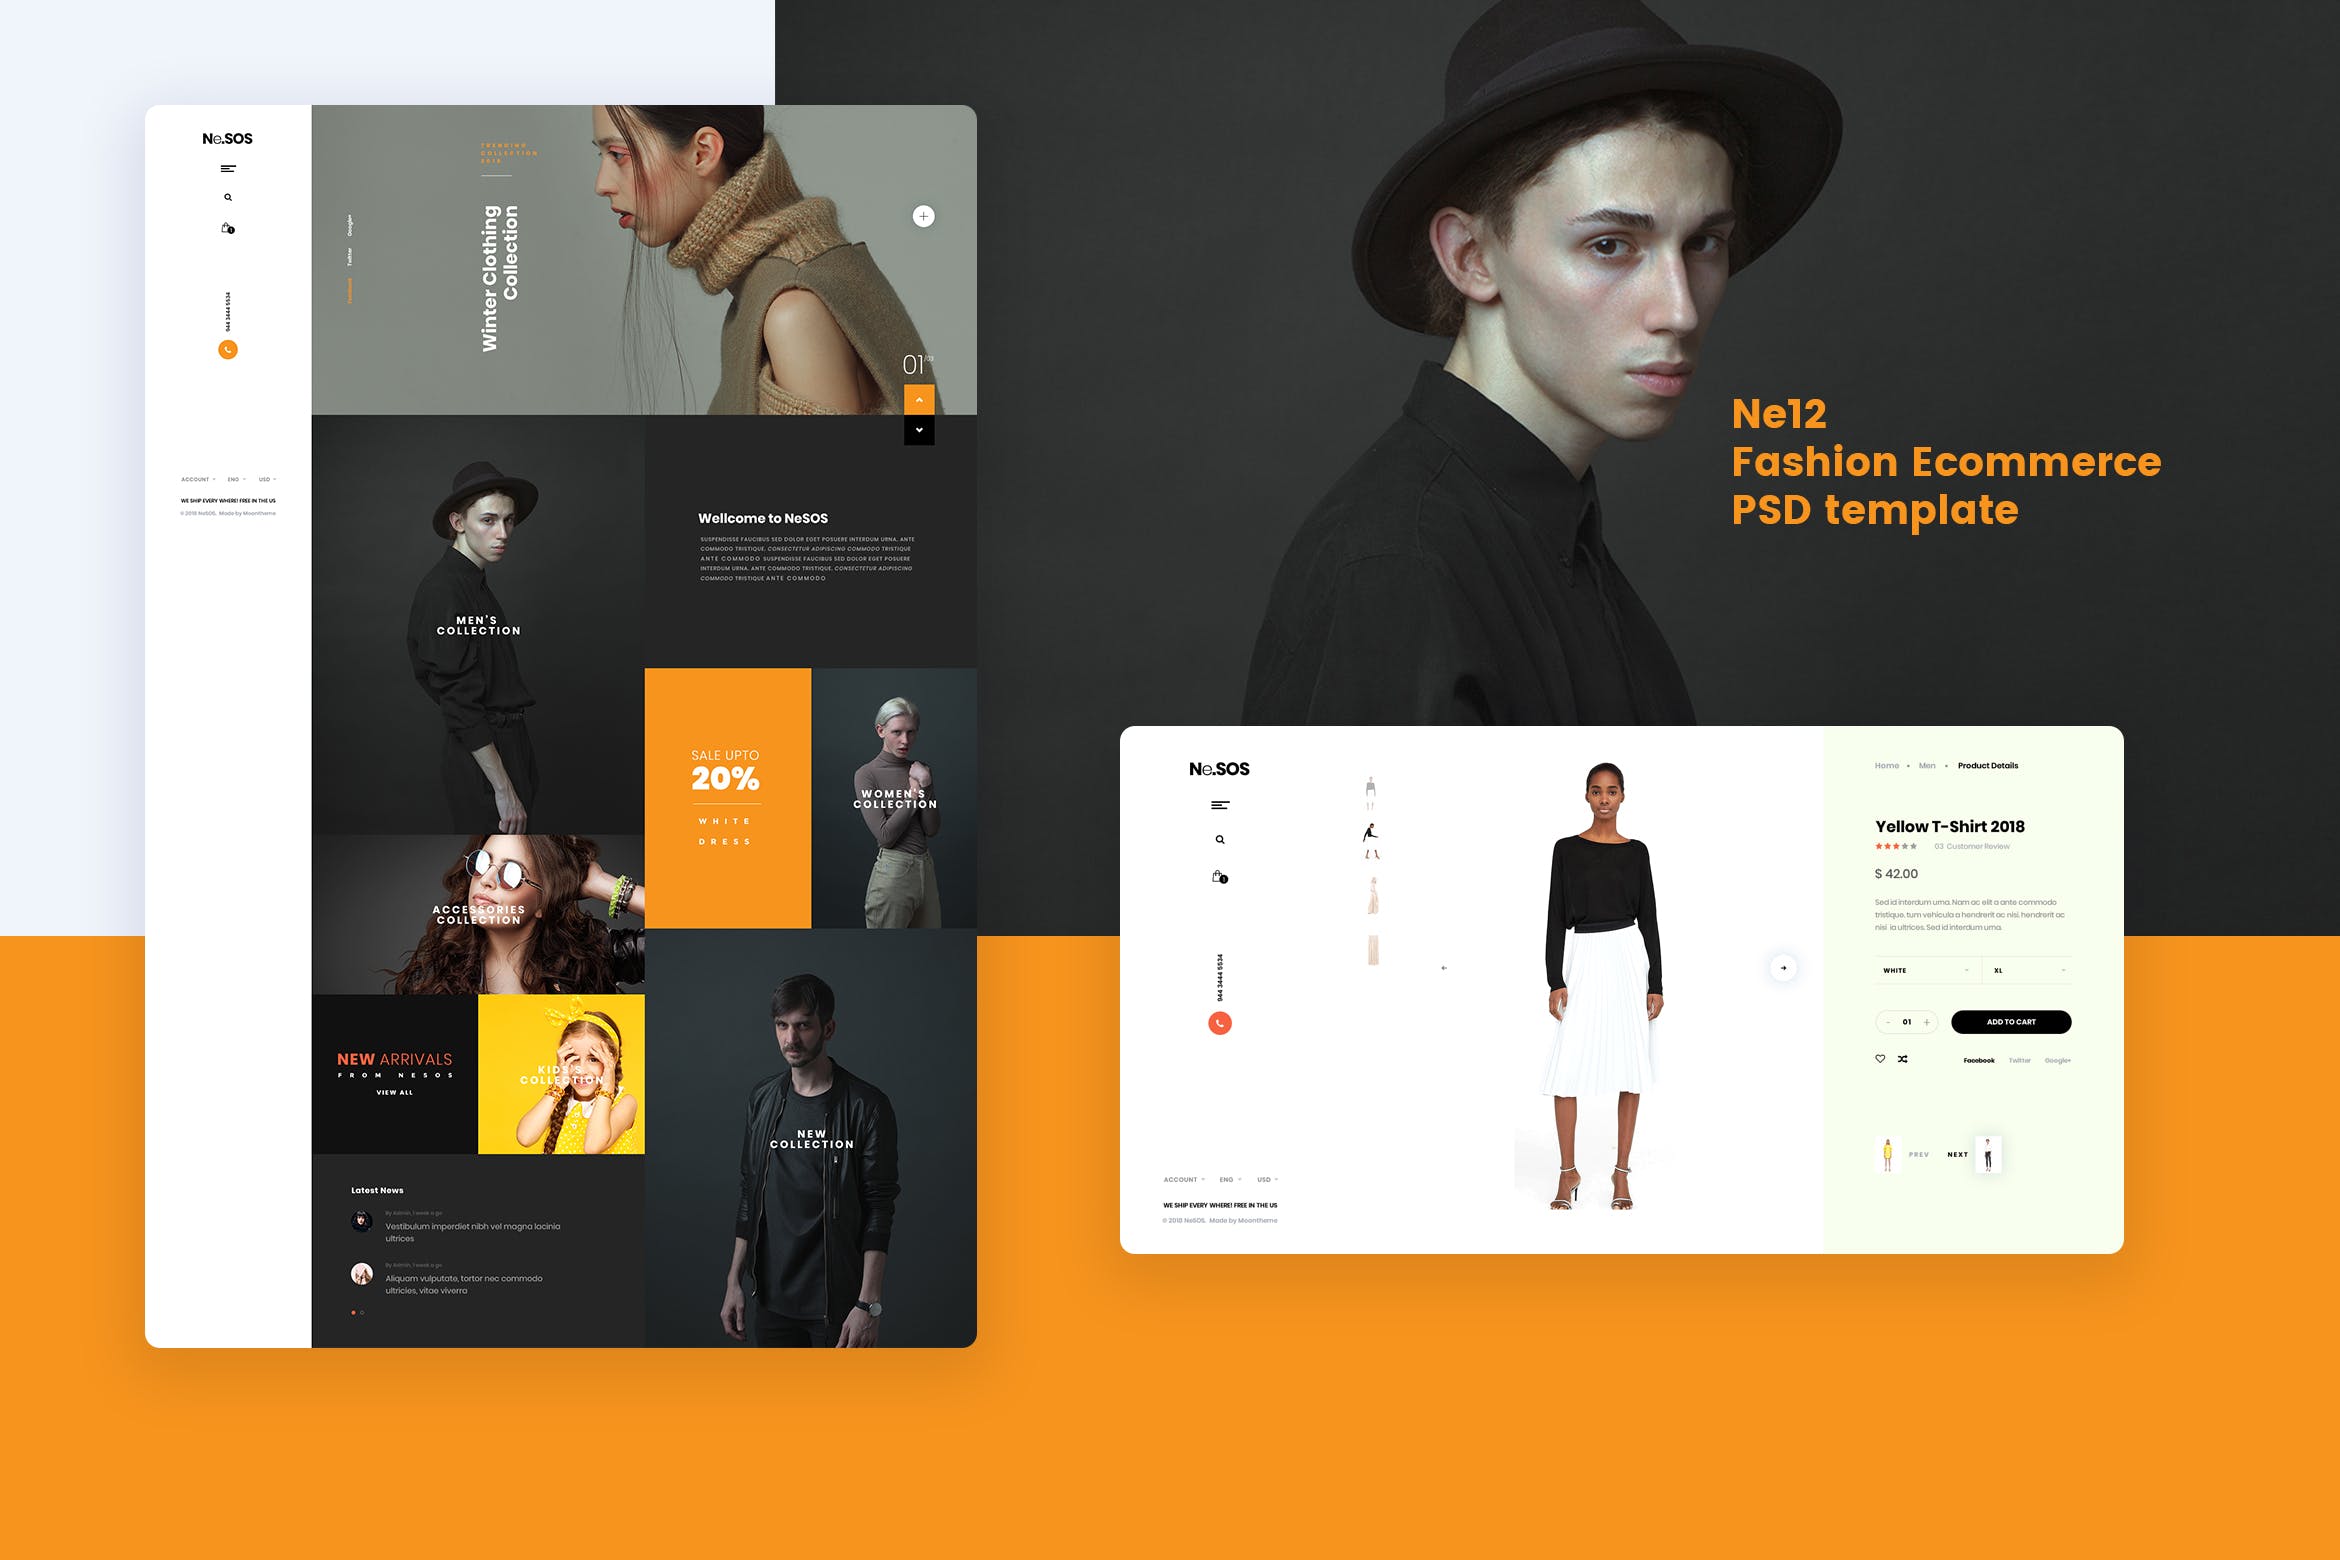 时尚服装网上商城网站设计PSD模板 Ne12 – Fashion Ecommerce PSD template插图